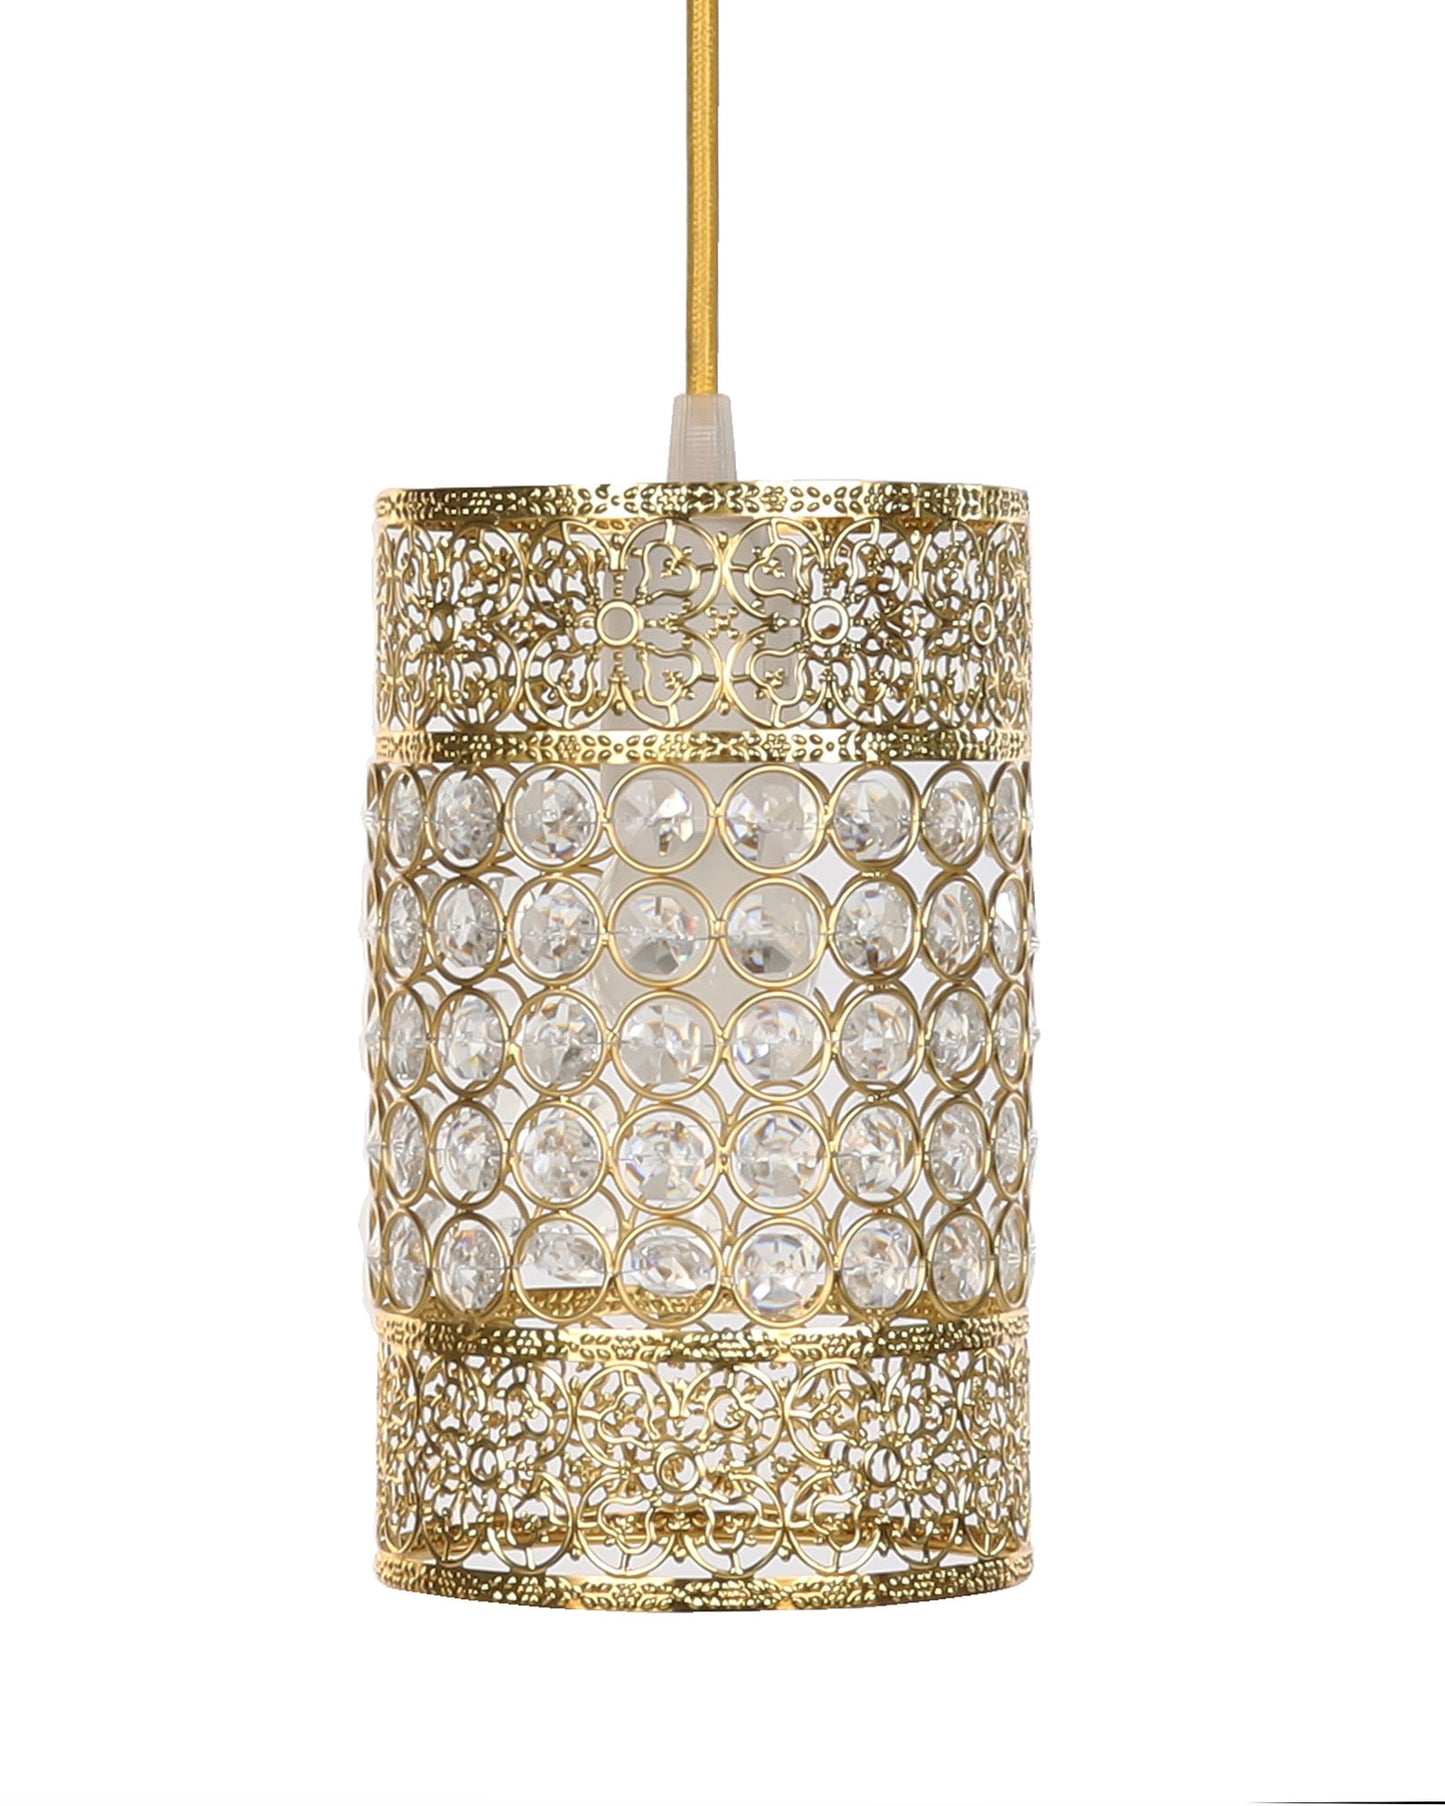 Hanging golden crystal pendant light, Classic Floral Adjustable Pendant Light Fixture for Kitchen Dinning Room Bedroom, Leafy Cylinder